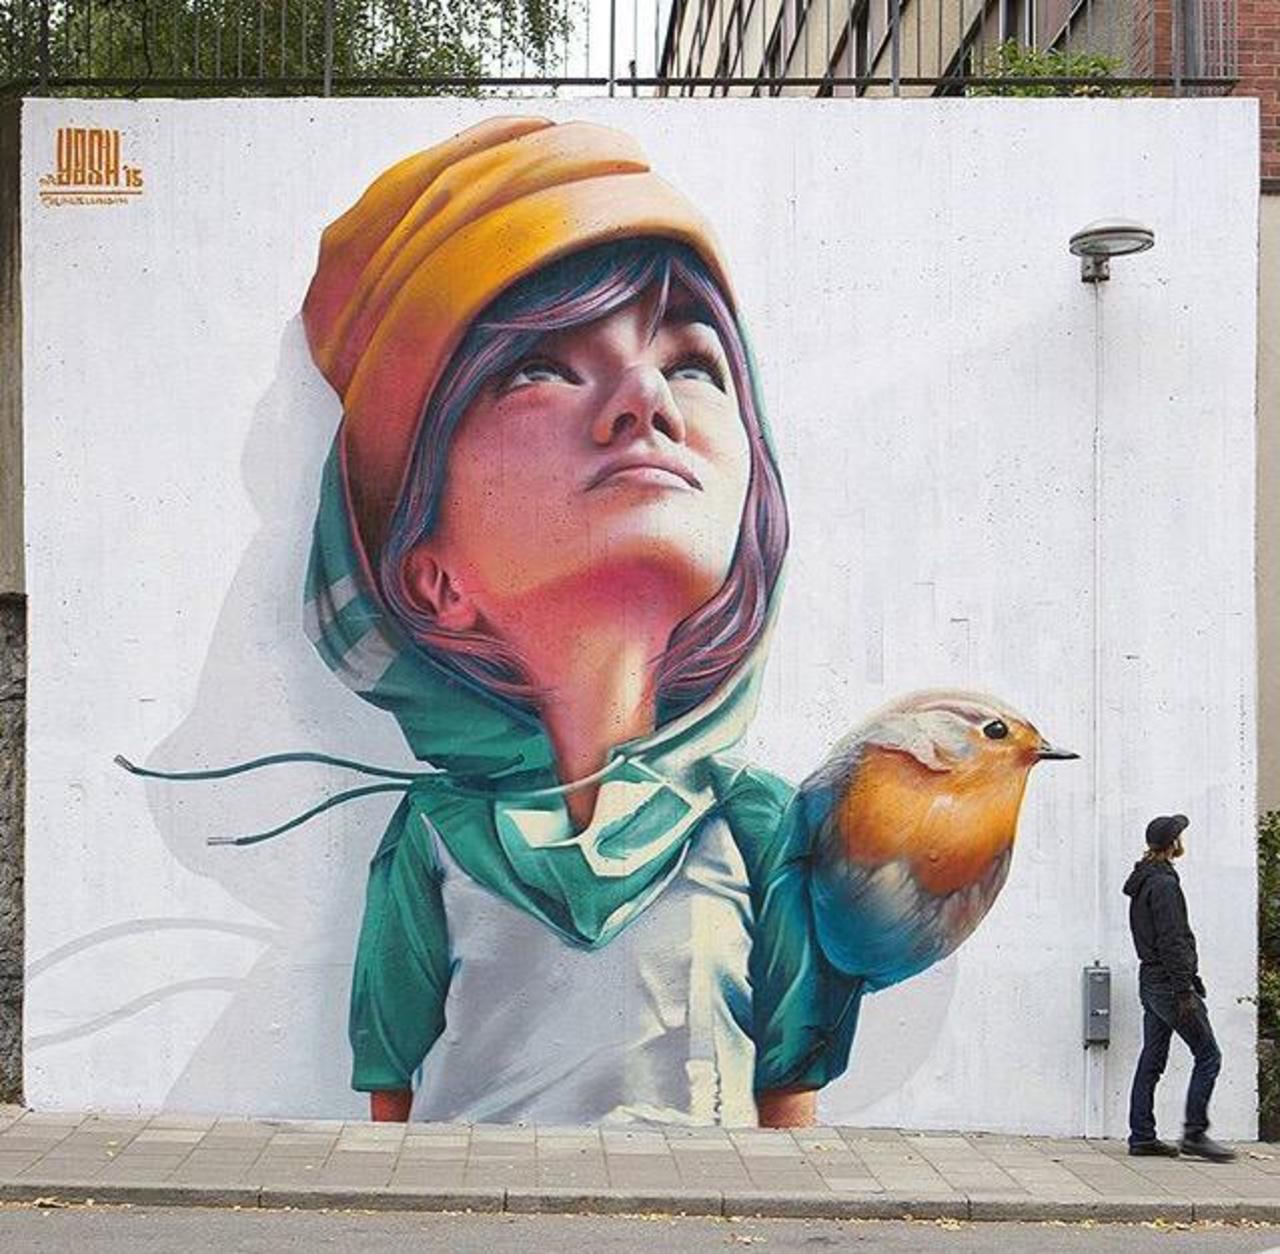 New Street Art by Yash 

#art #graffiti #mural #streetart http://t.co/756SpXixJ4